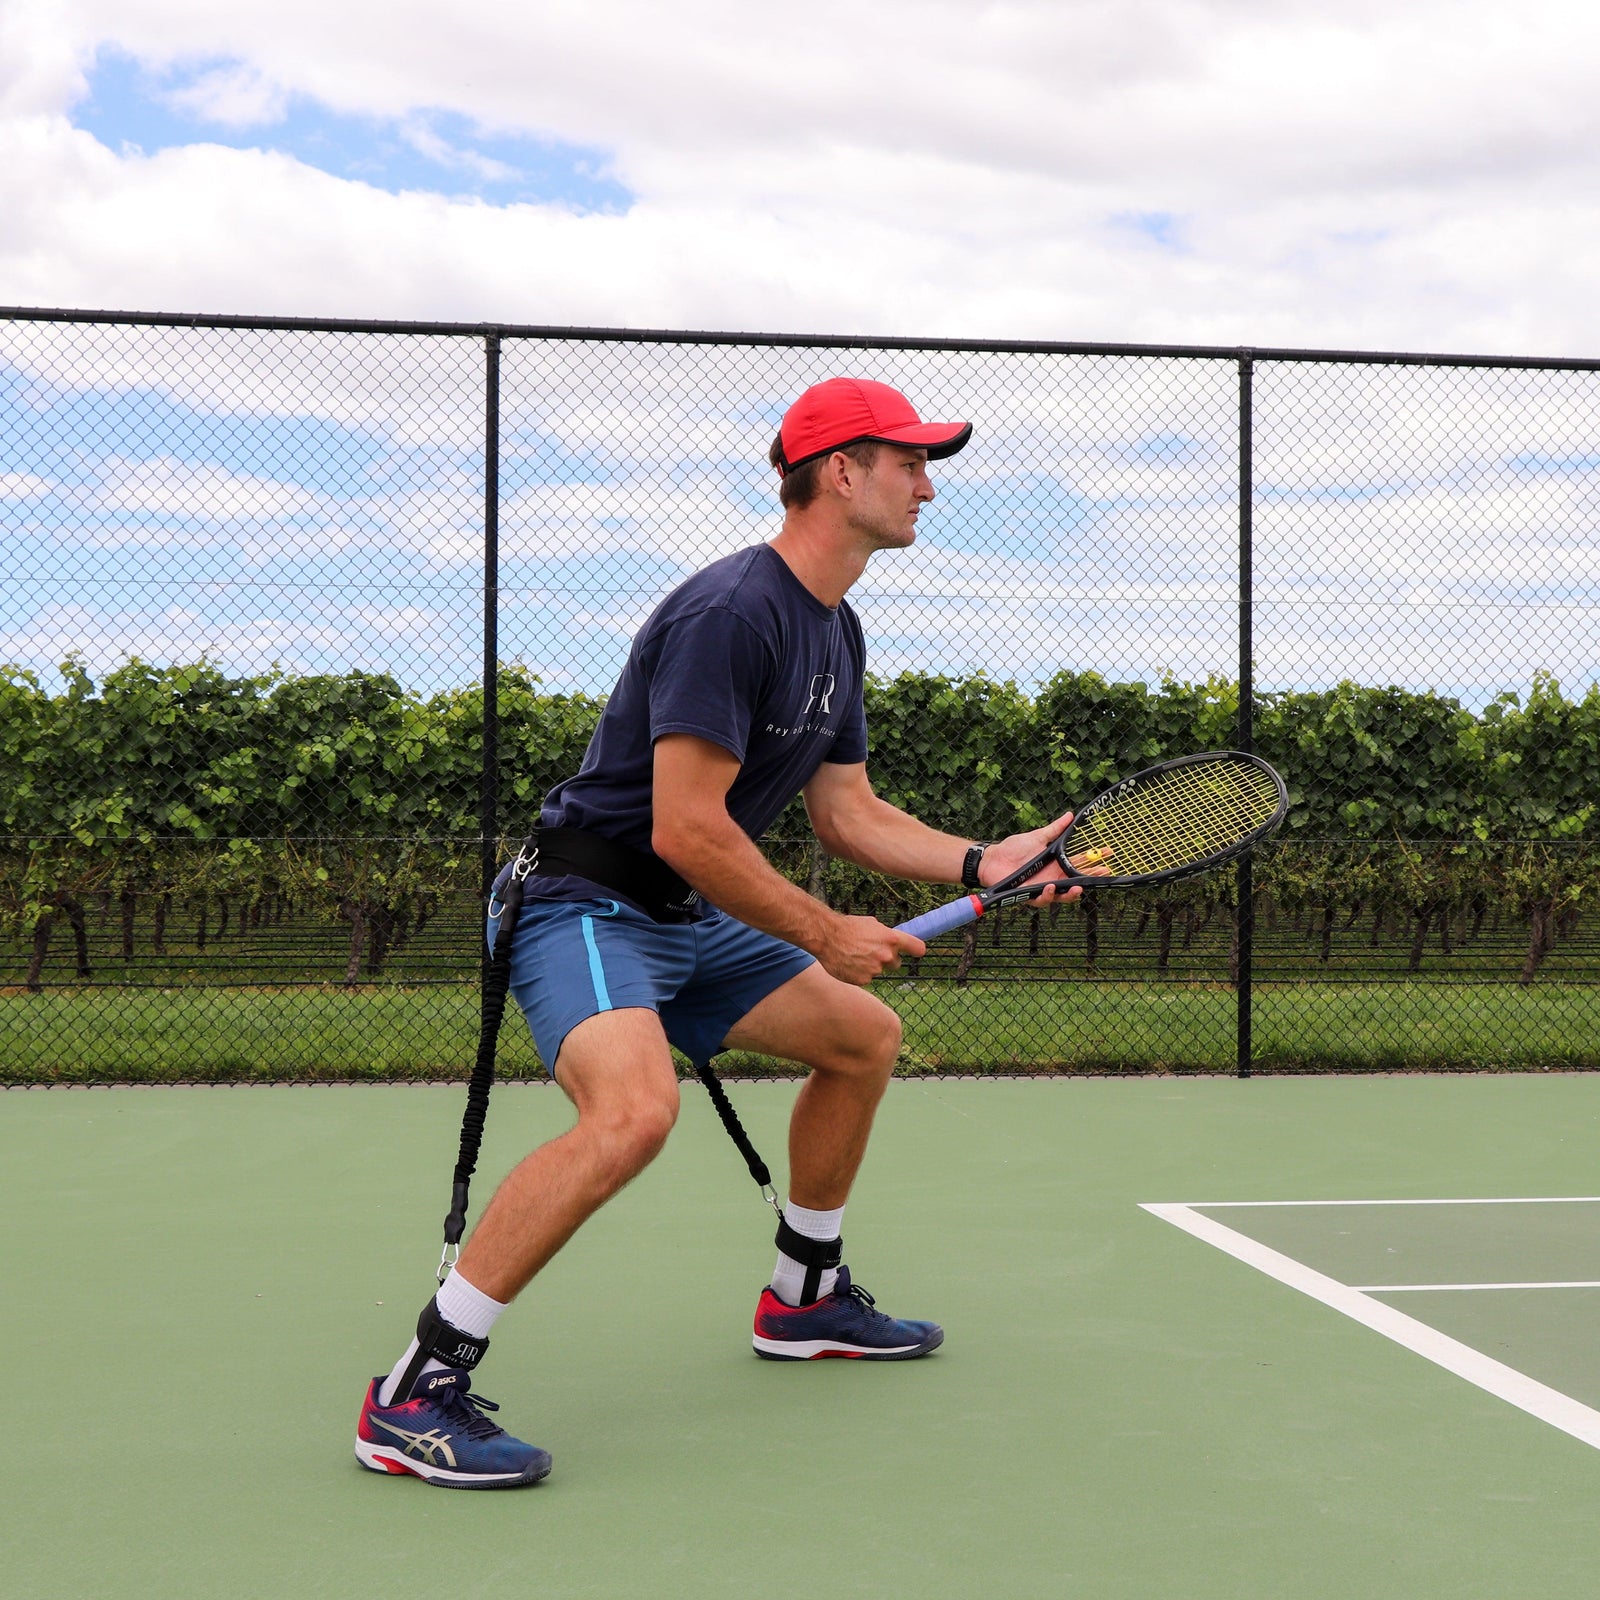 Details Matter: The Art of Tennis - XPAND